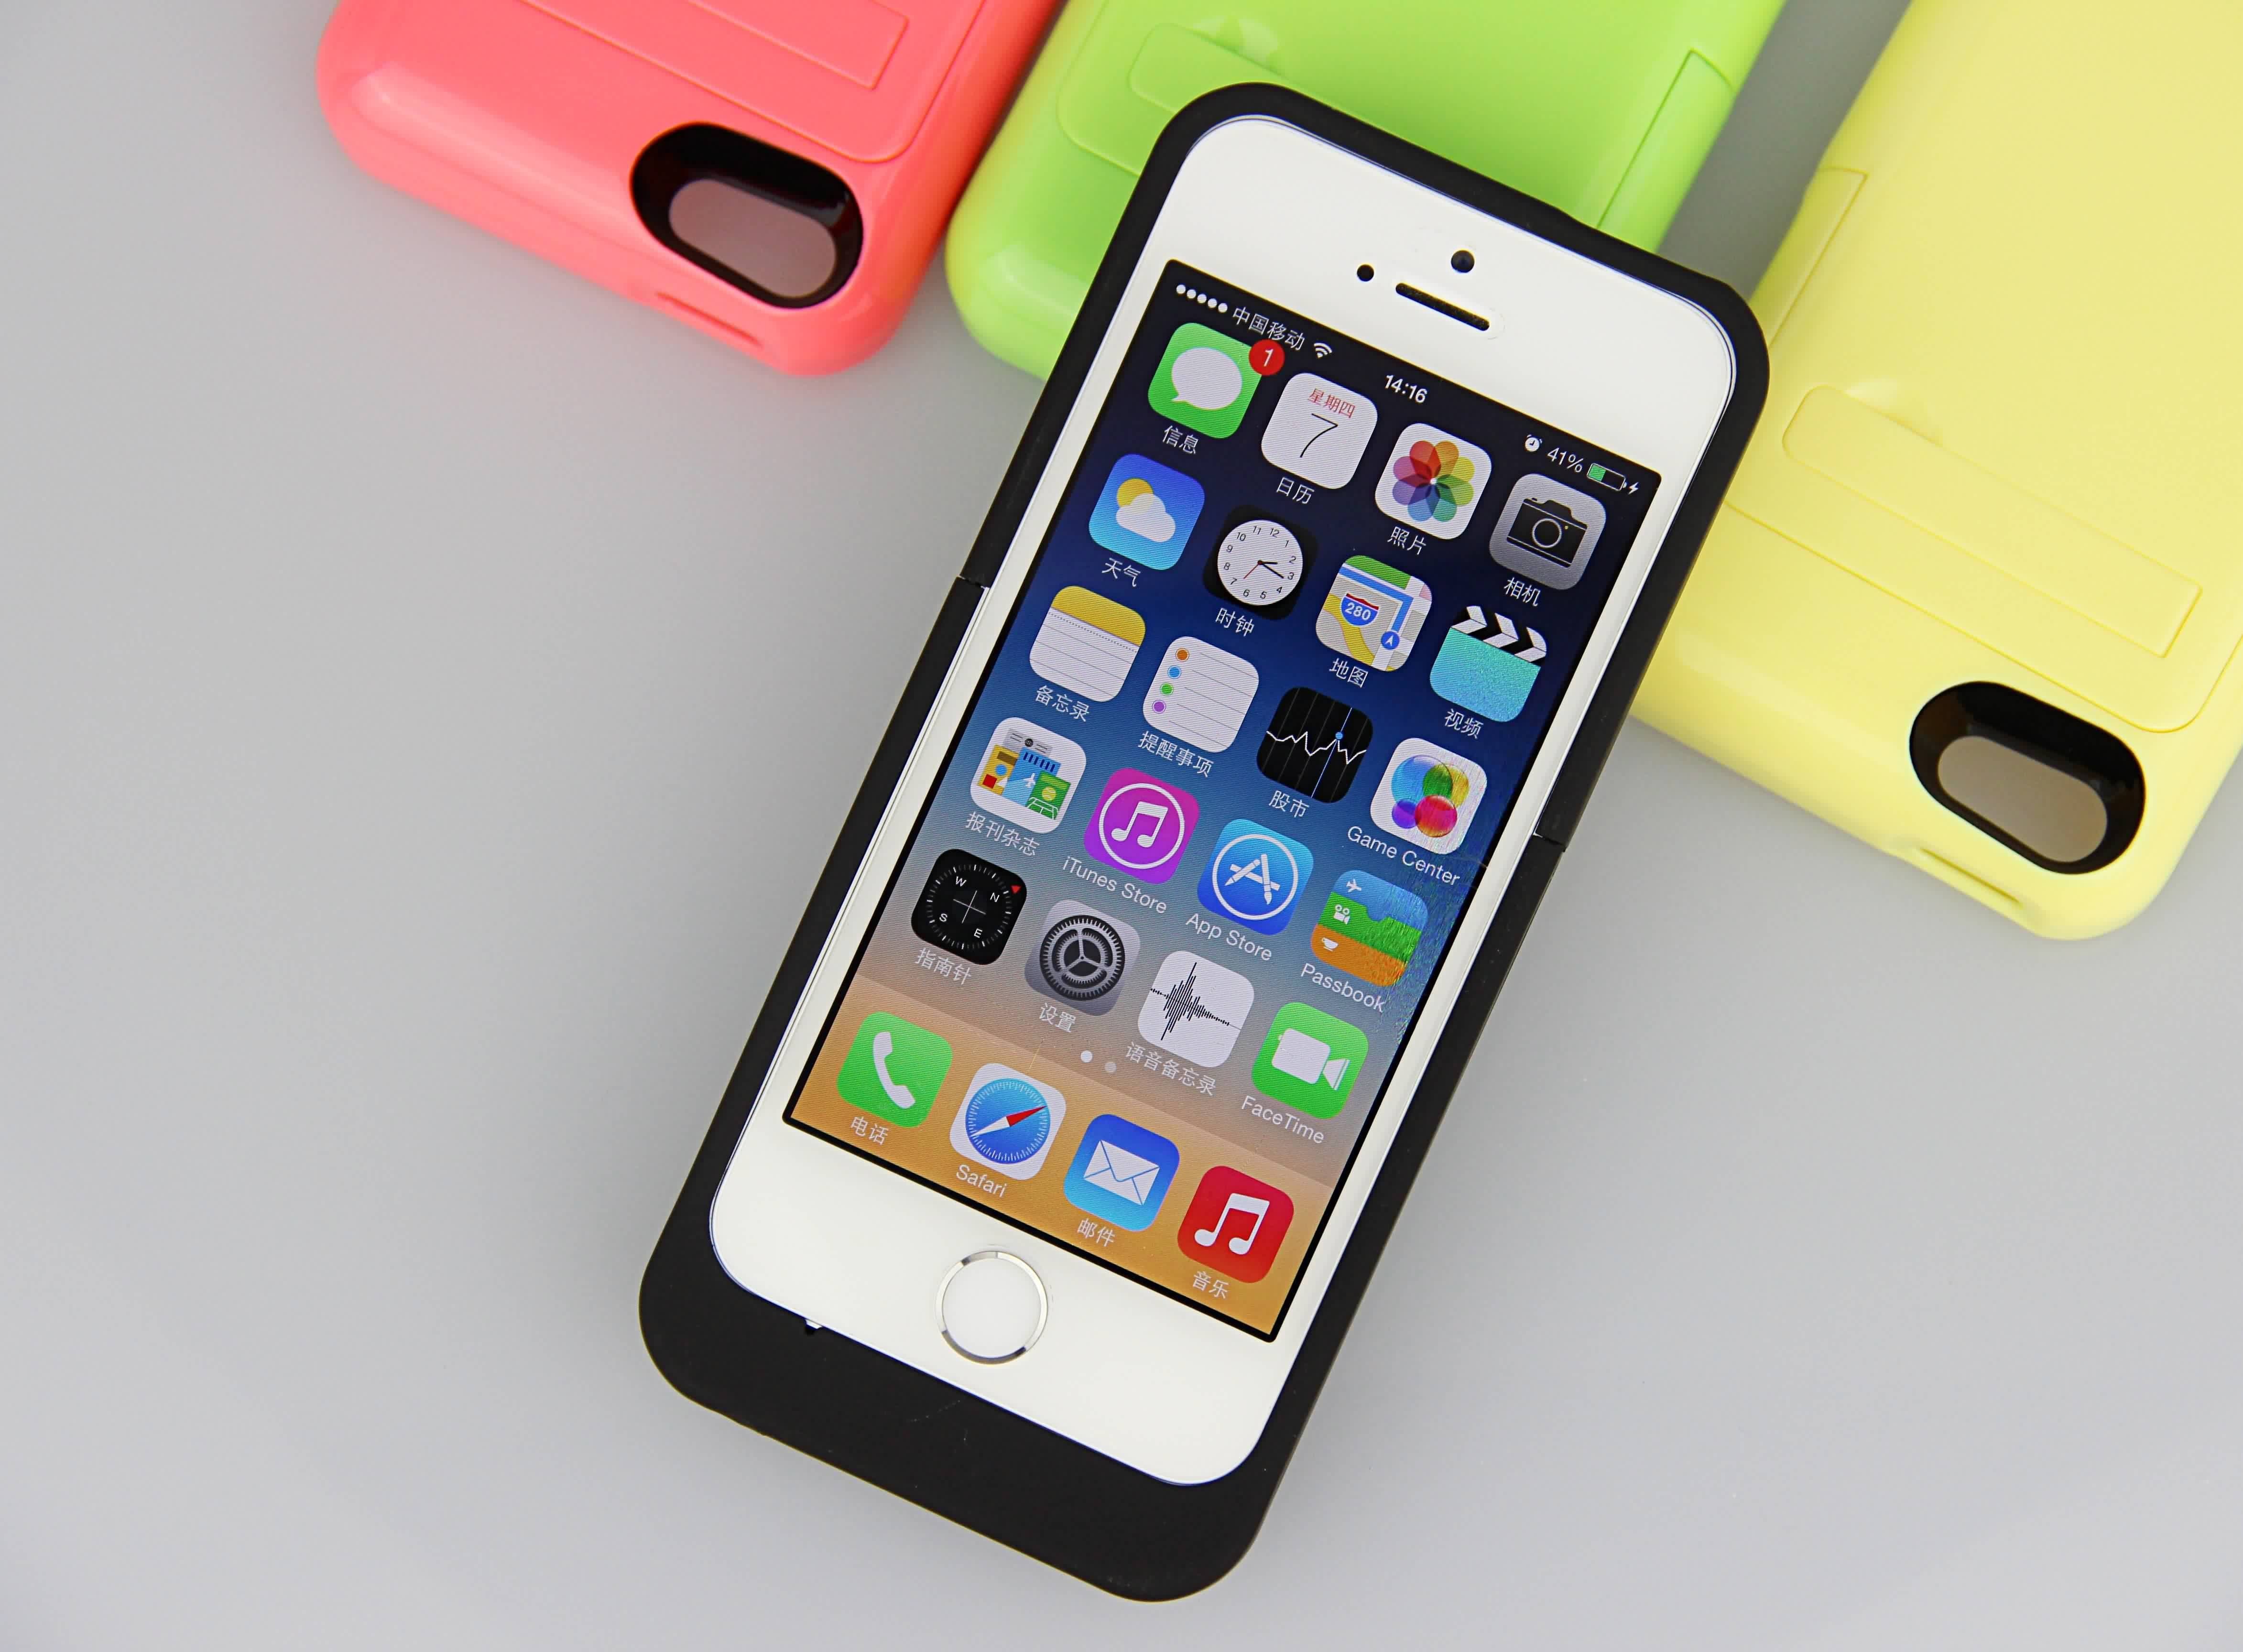 Πολυ πακέτο δύναμης μπαταριών υπόθεσης 2200mAh μπαταριών iPhone χρώματος λεπτό για το iPhone 5